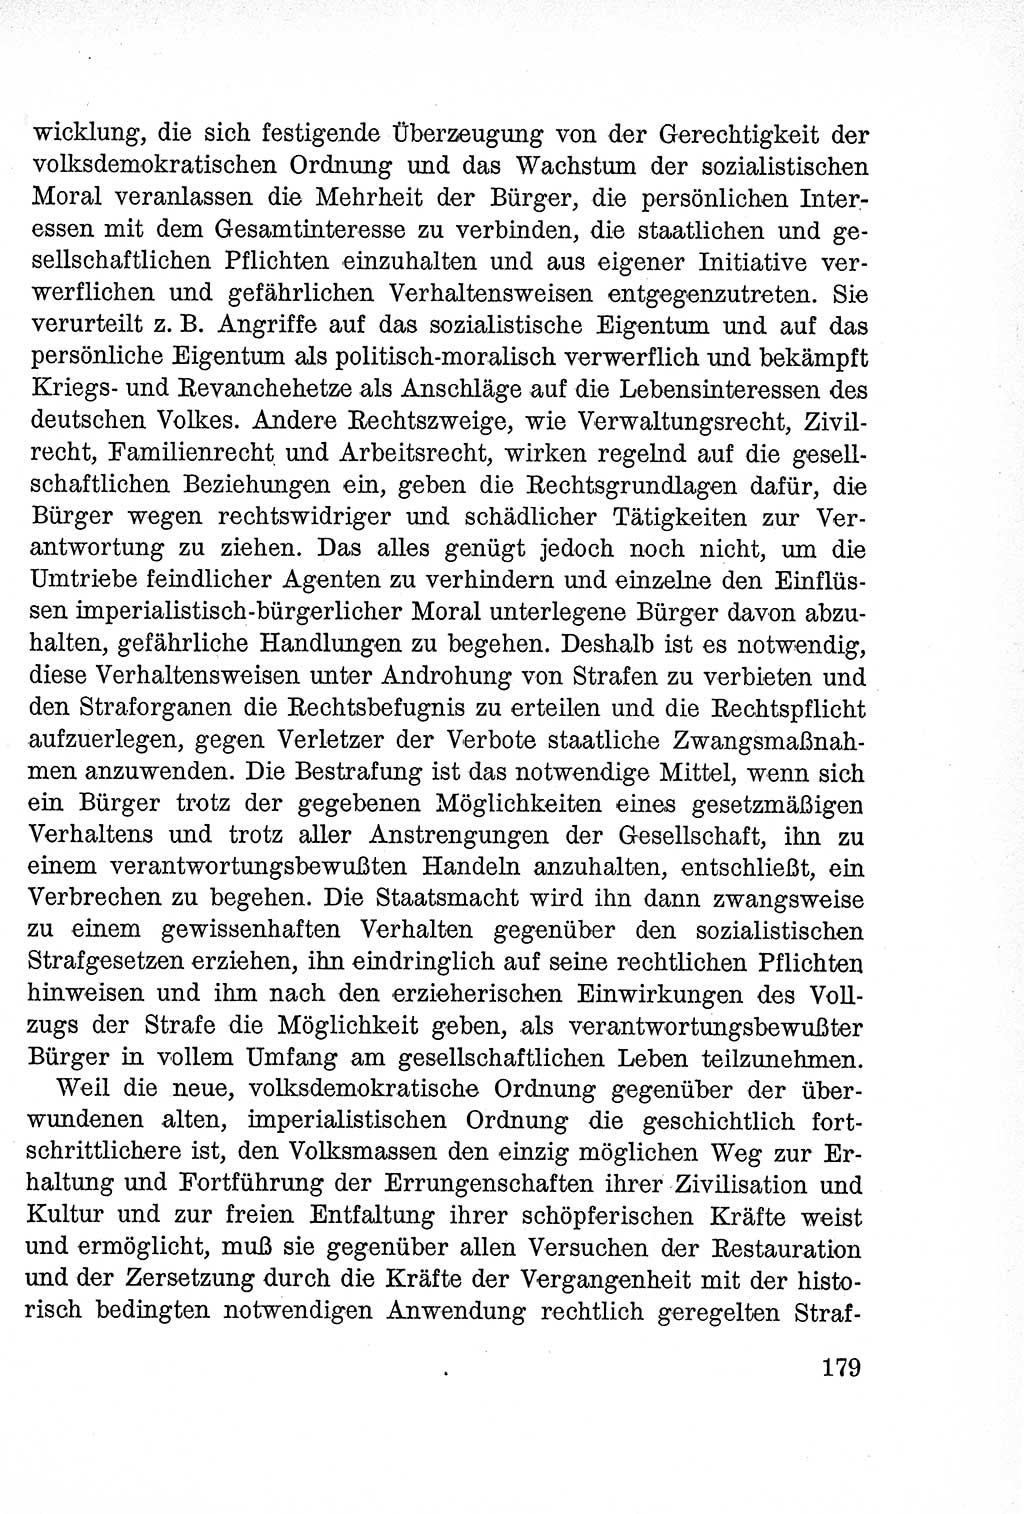 Lehrbuch des Strafrechts der Deutschen Demokratischen Republik (DDR), Allgemeiner Teil 1957, Seite 179 (Lb. Strafr. DDR AT 1957, S. 179)